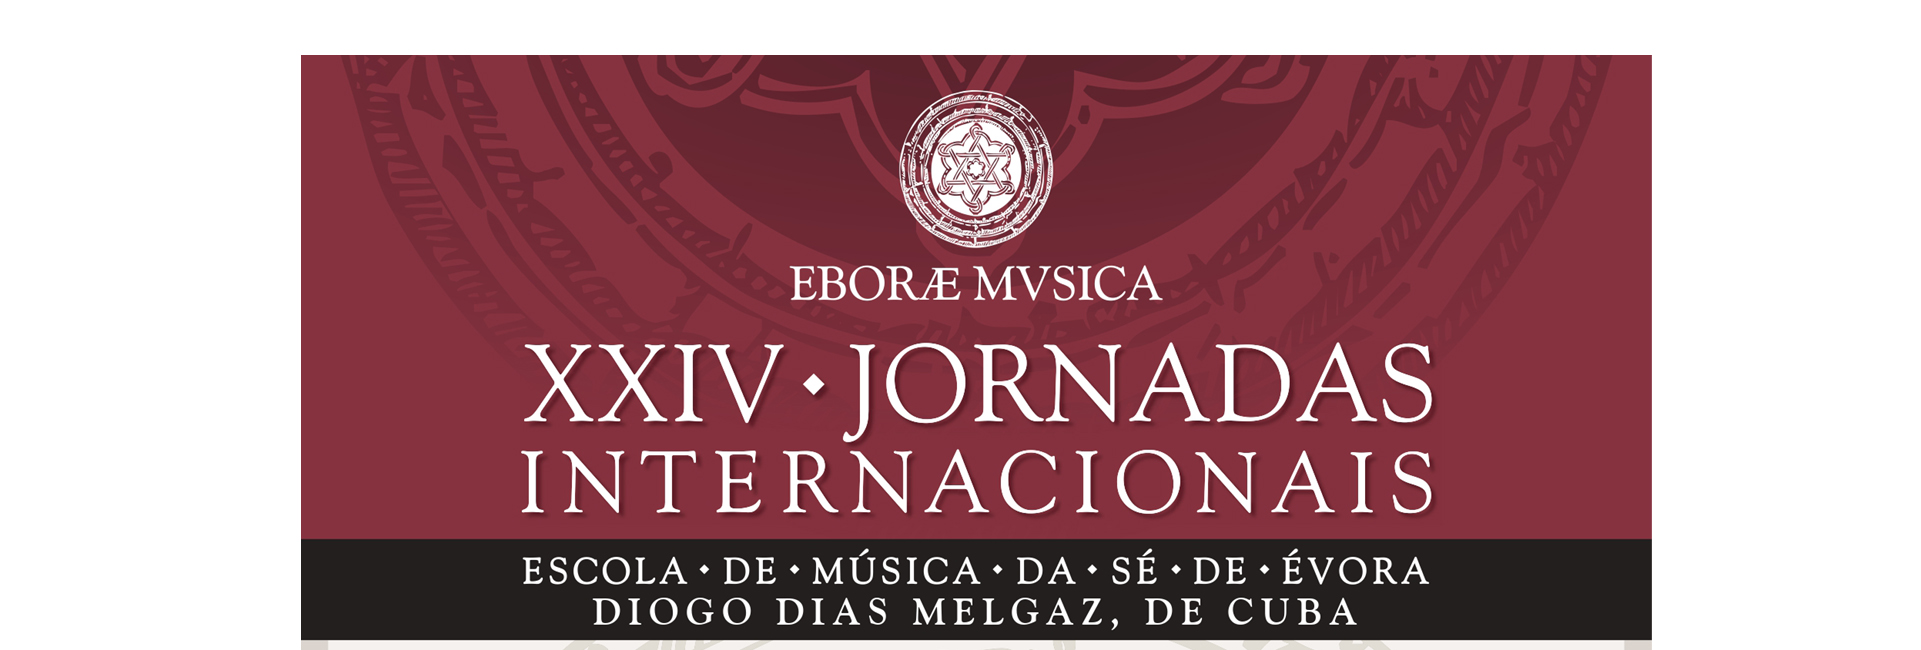 (Português) XXIV Jornadas Internacionais « Escola de Música da Sé de Évora »